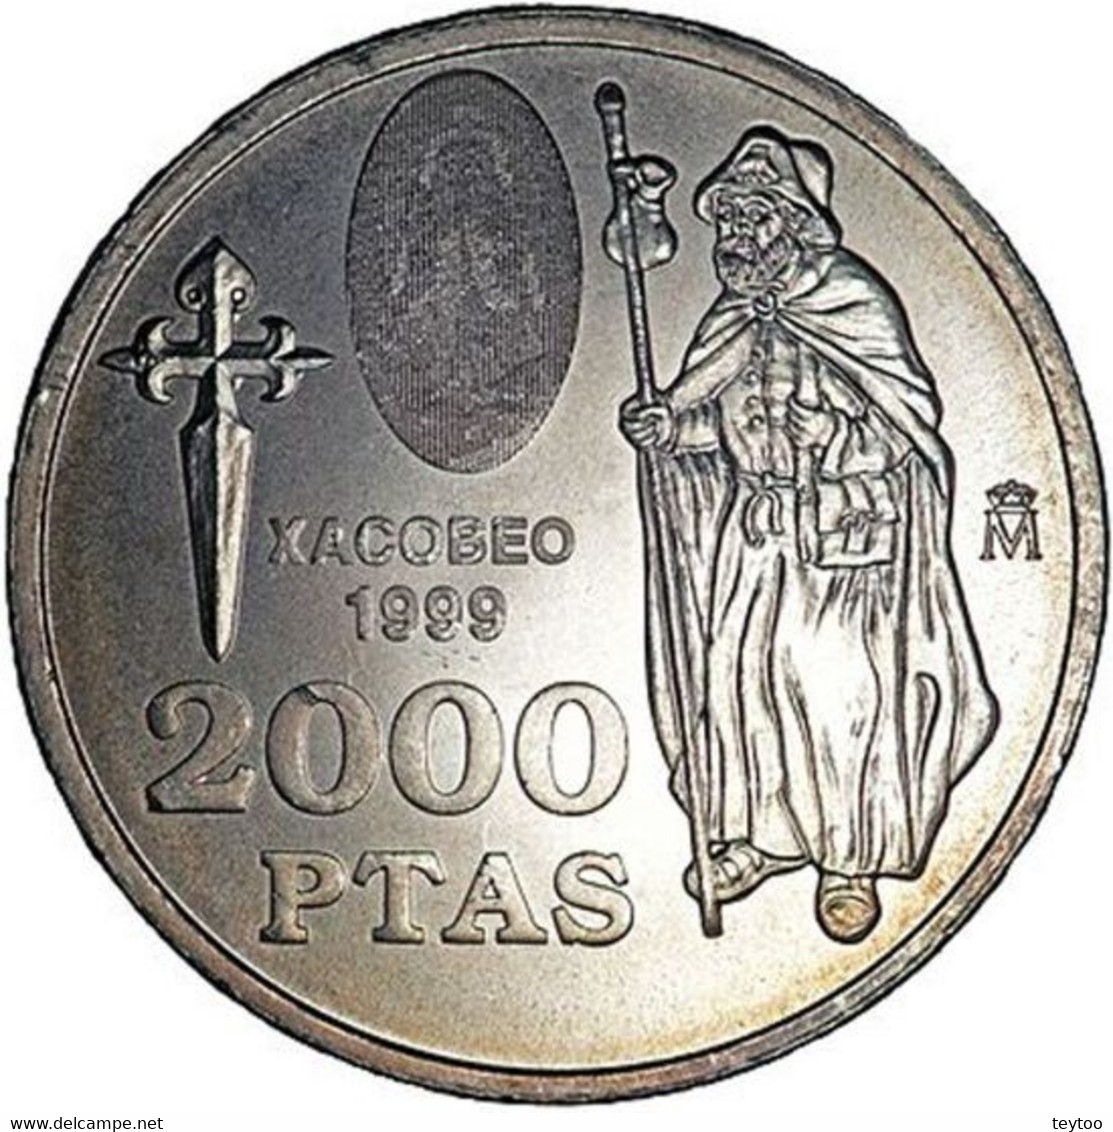 [C0955] España 1999. Cartera Xacobeo '99. 2000 Pts. Plata (BU) - 2 000 Pesetas